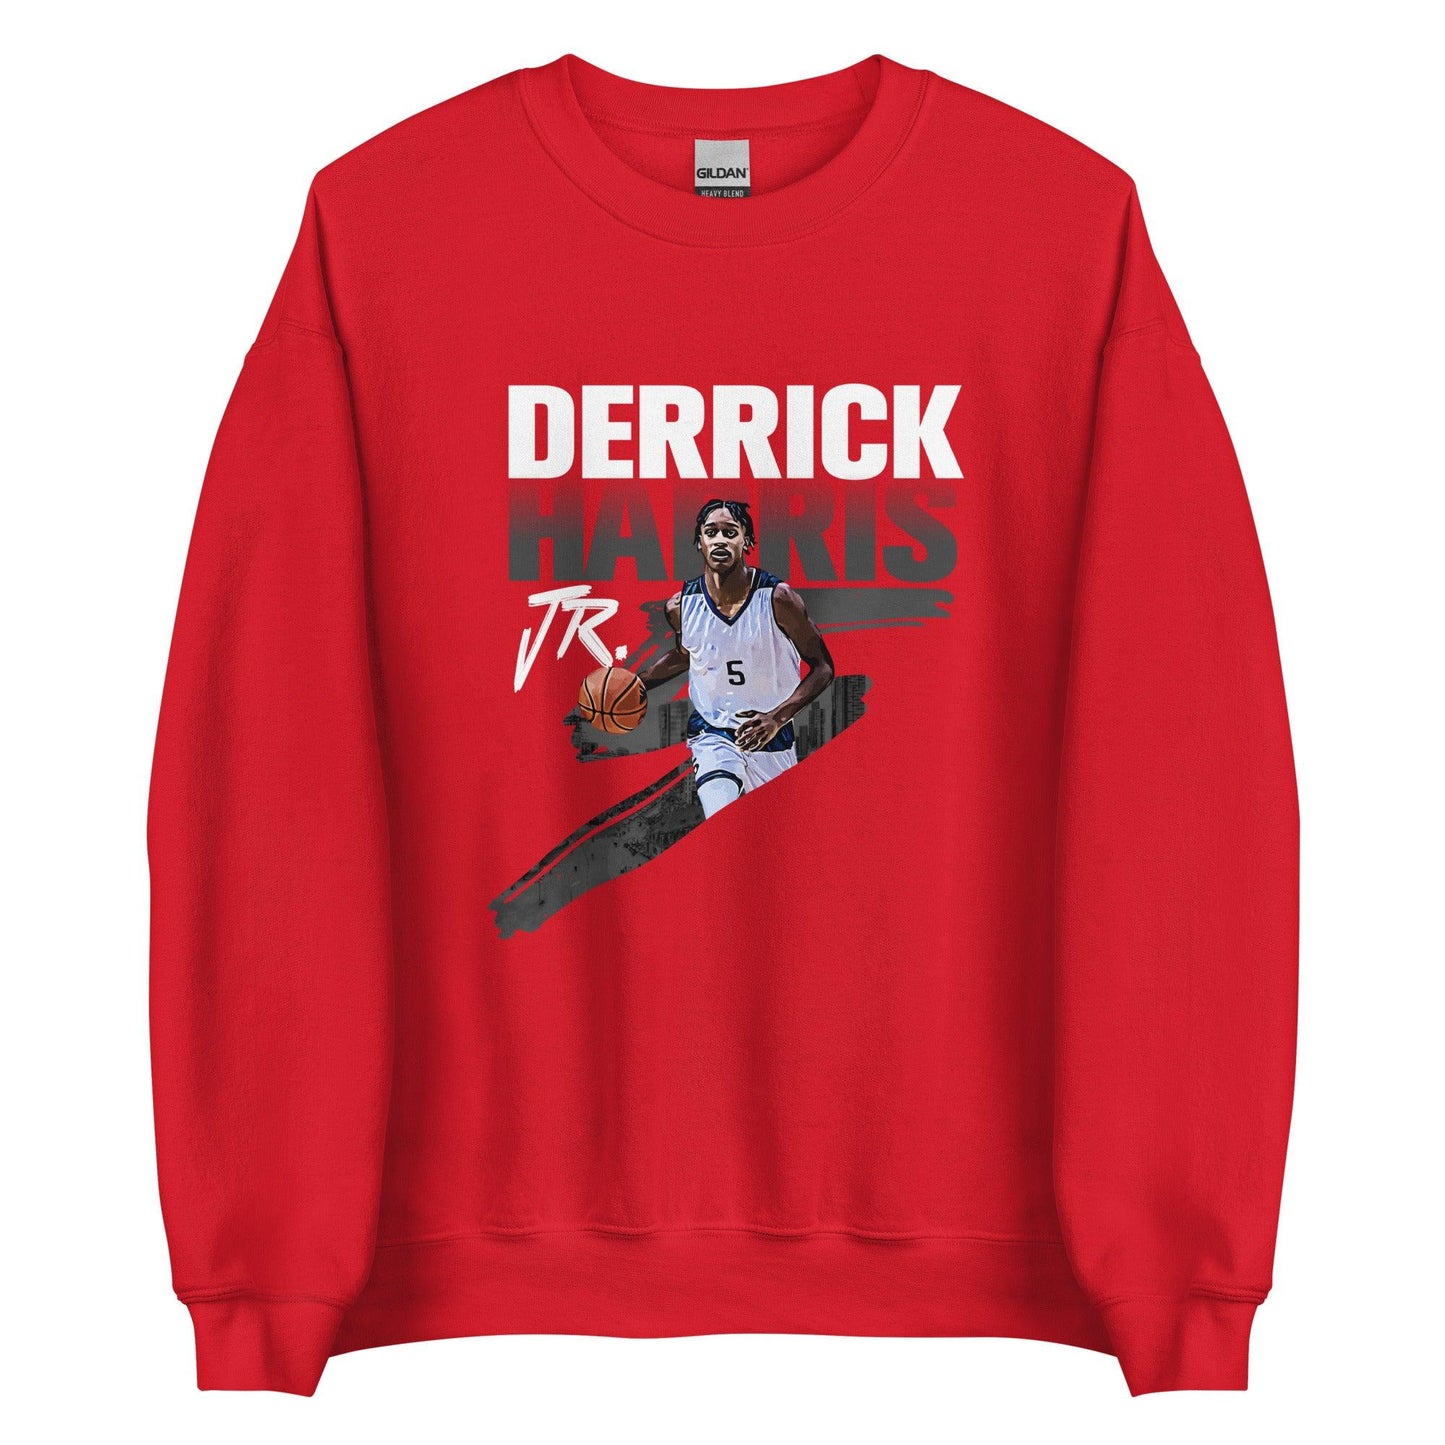 Derrick Harris Jr. "Gameday" Sweatshirt - Fan Arch